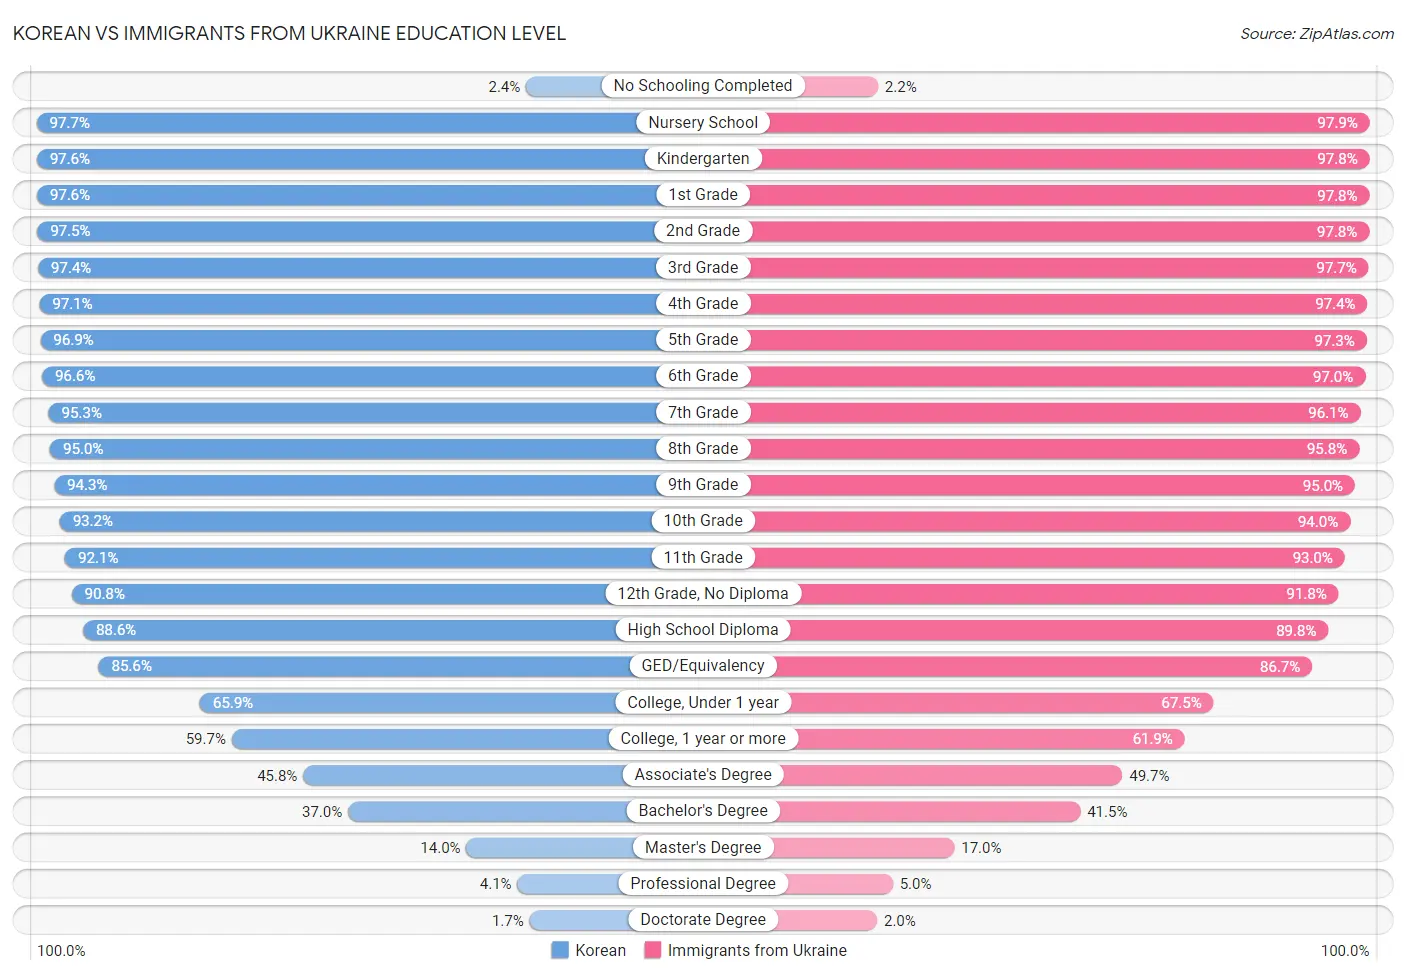 Korean vs Immigrants from Ukraine Education Level